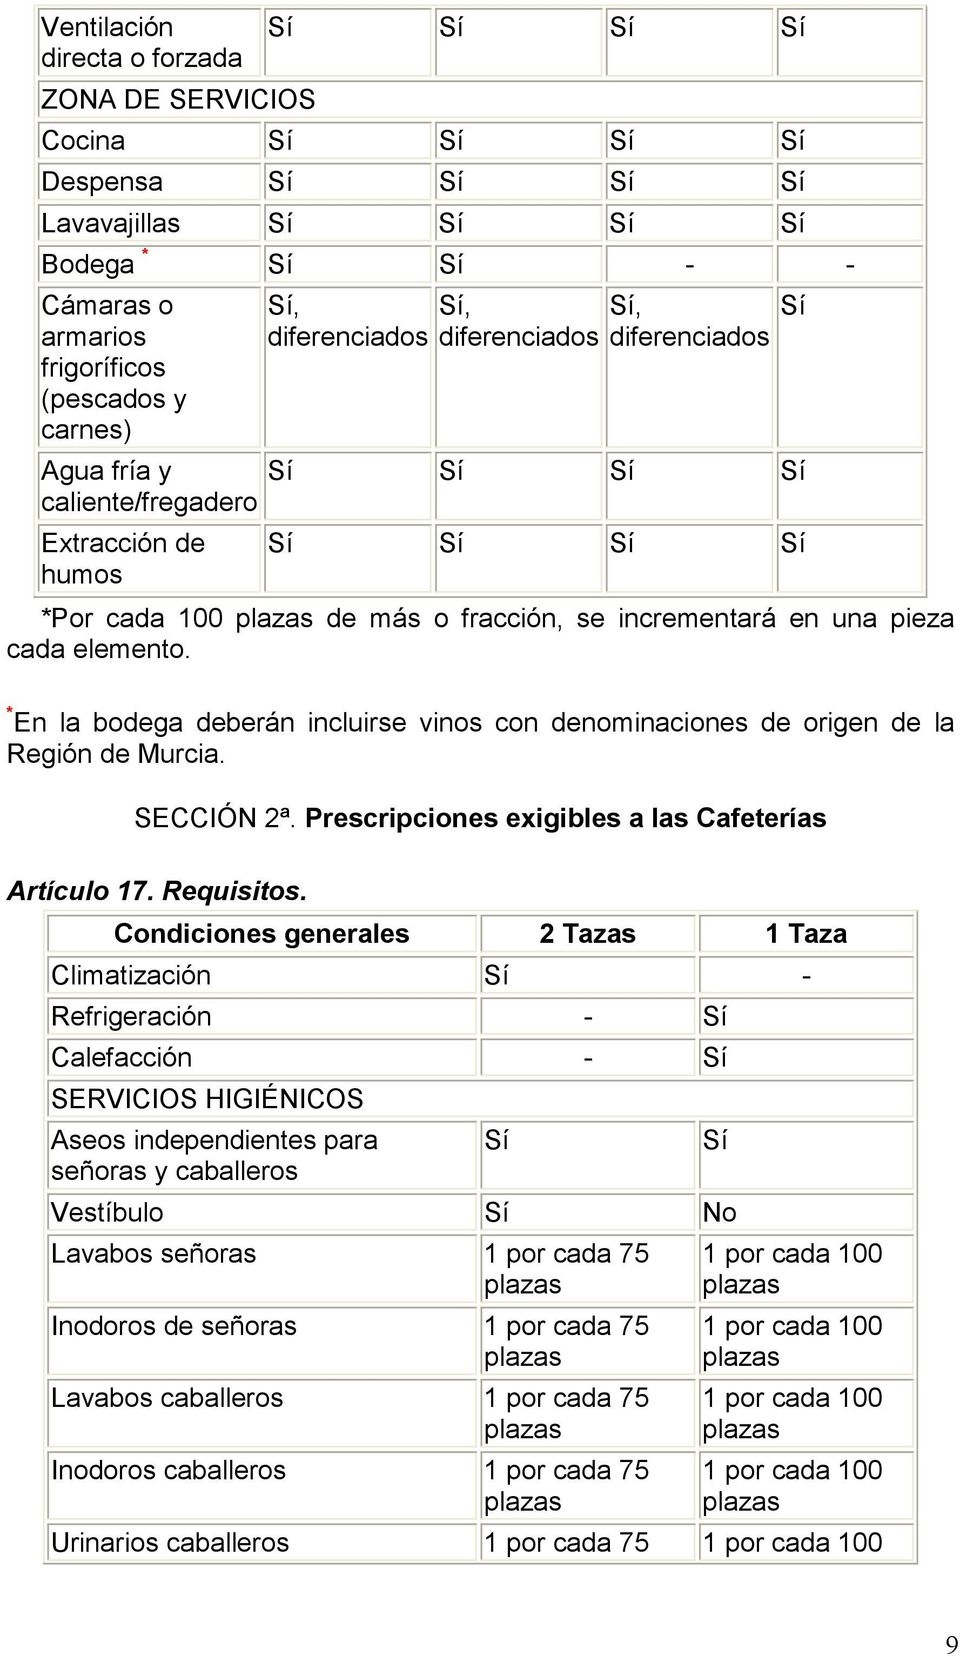 * En la bodega deberán incluirse vinos con denominaciones de origen de la Región de Murcia. SECCIÓN 2ª. Prescripciones exigibles a las Cafeterías Artículo 17. Requisitos.